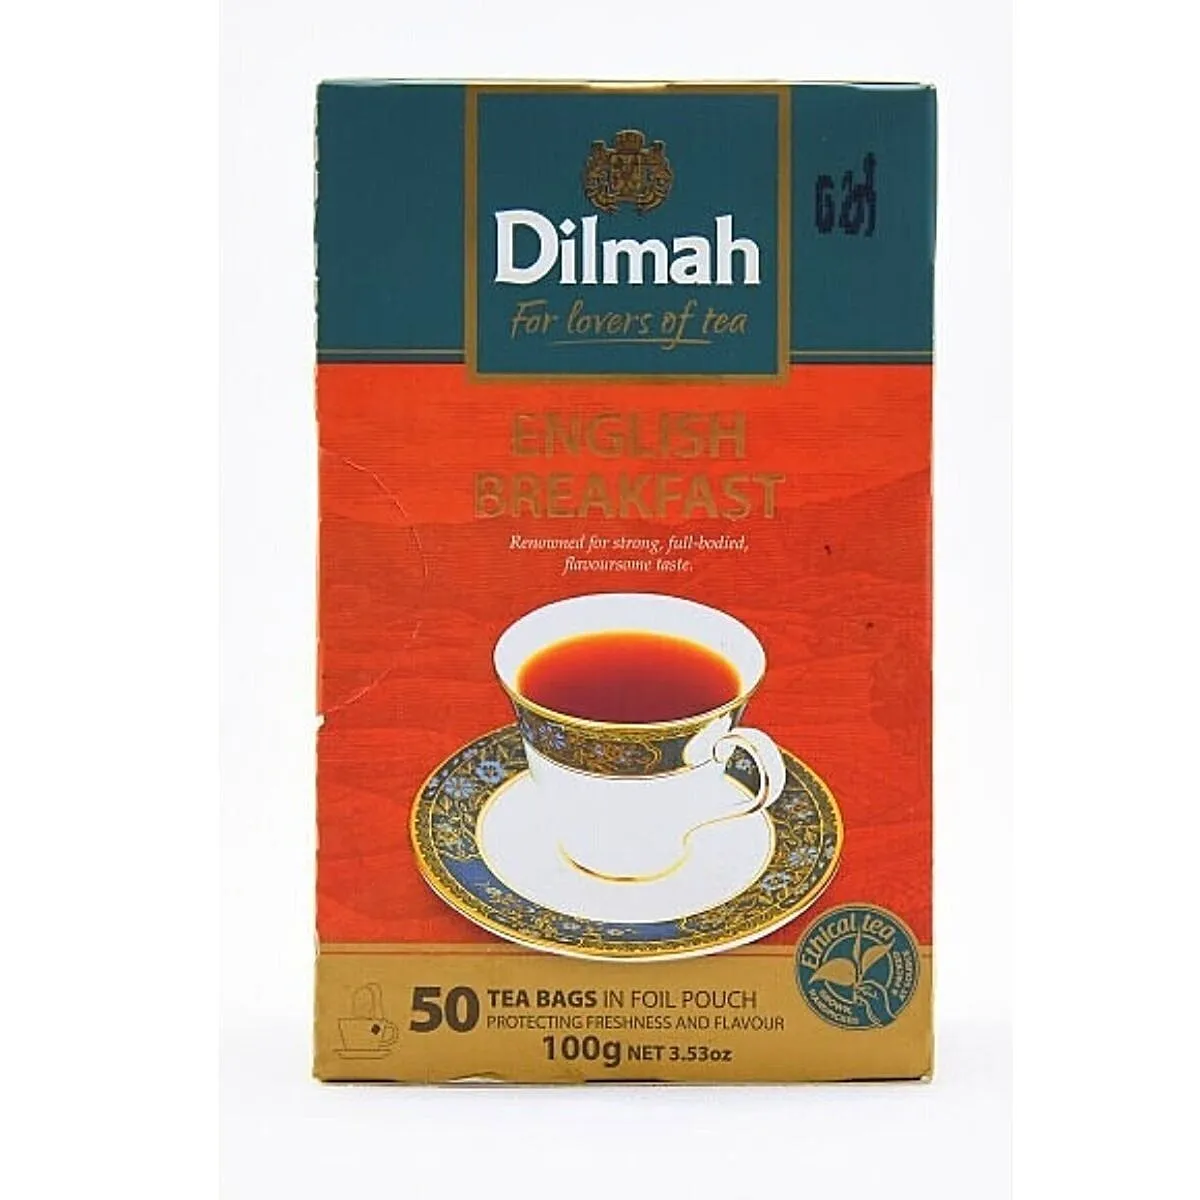 dilmah tea bags